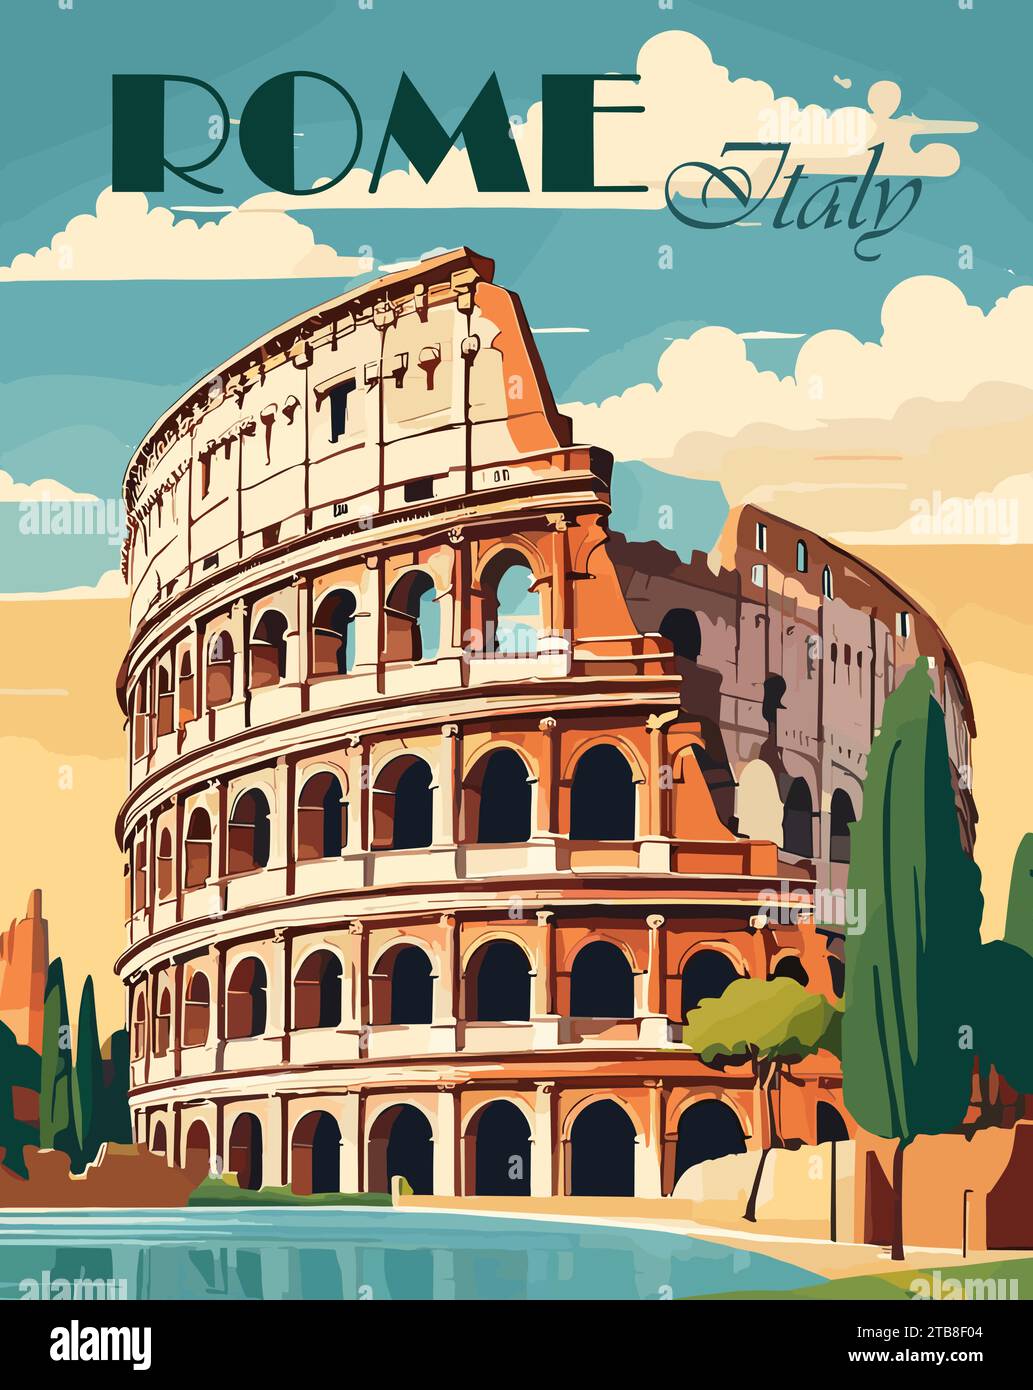 Roma, Italia destinazione di viaggio retro poster vettoriale Illustrazione Vettoriale